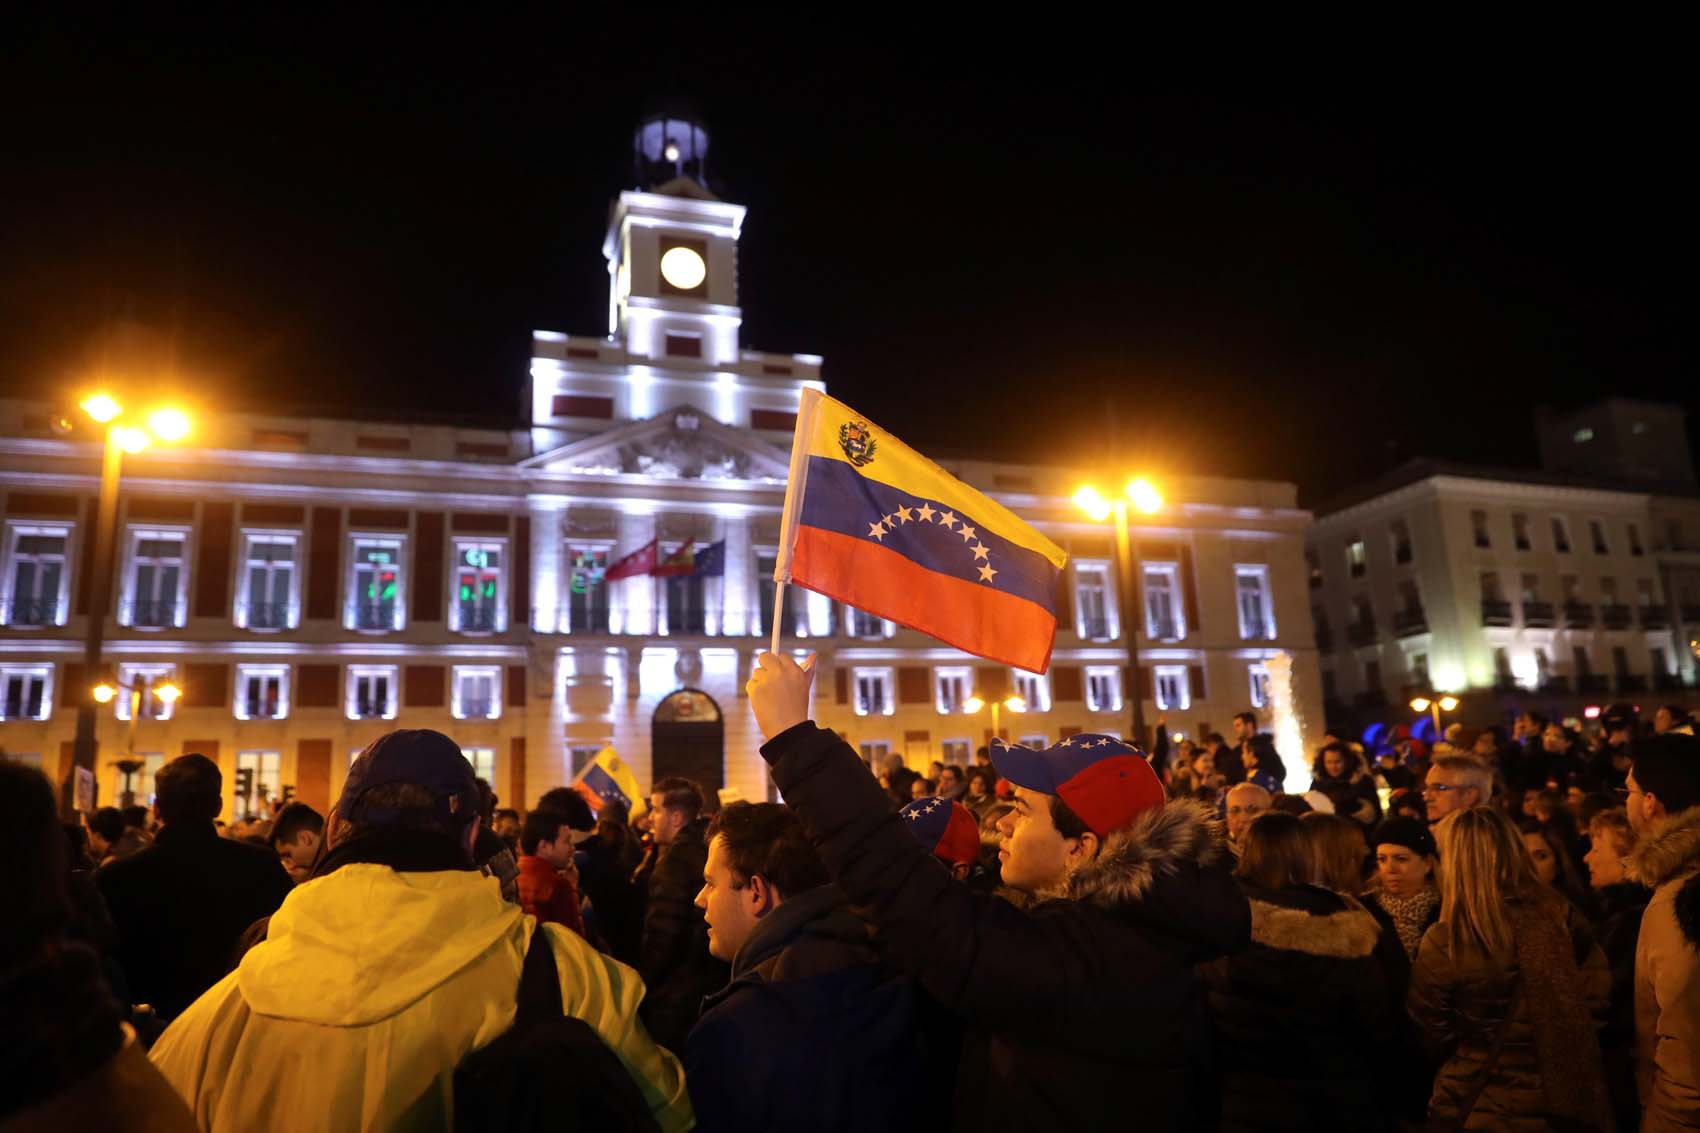 Los venezolanos toman la Puerta del Sol en Madrid:  Sánchez, ¡escucha! Únete a la lucha (fotos y video)